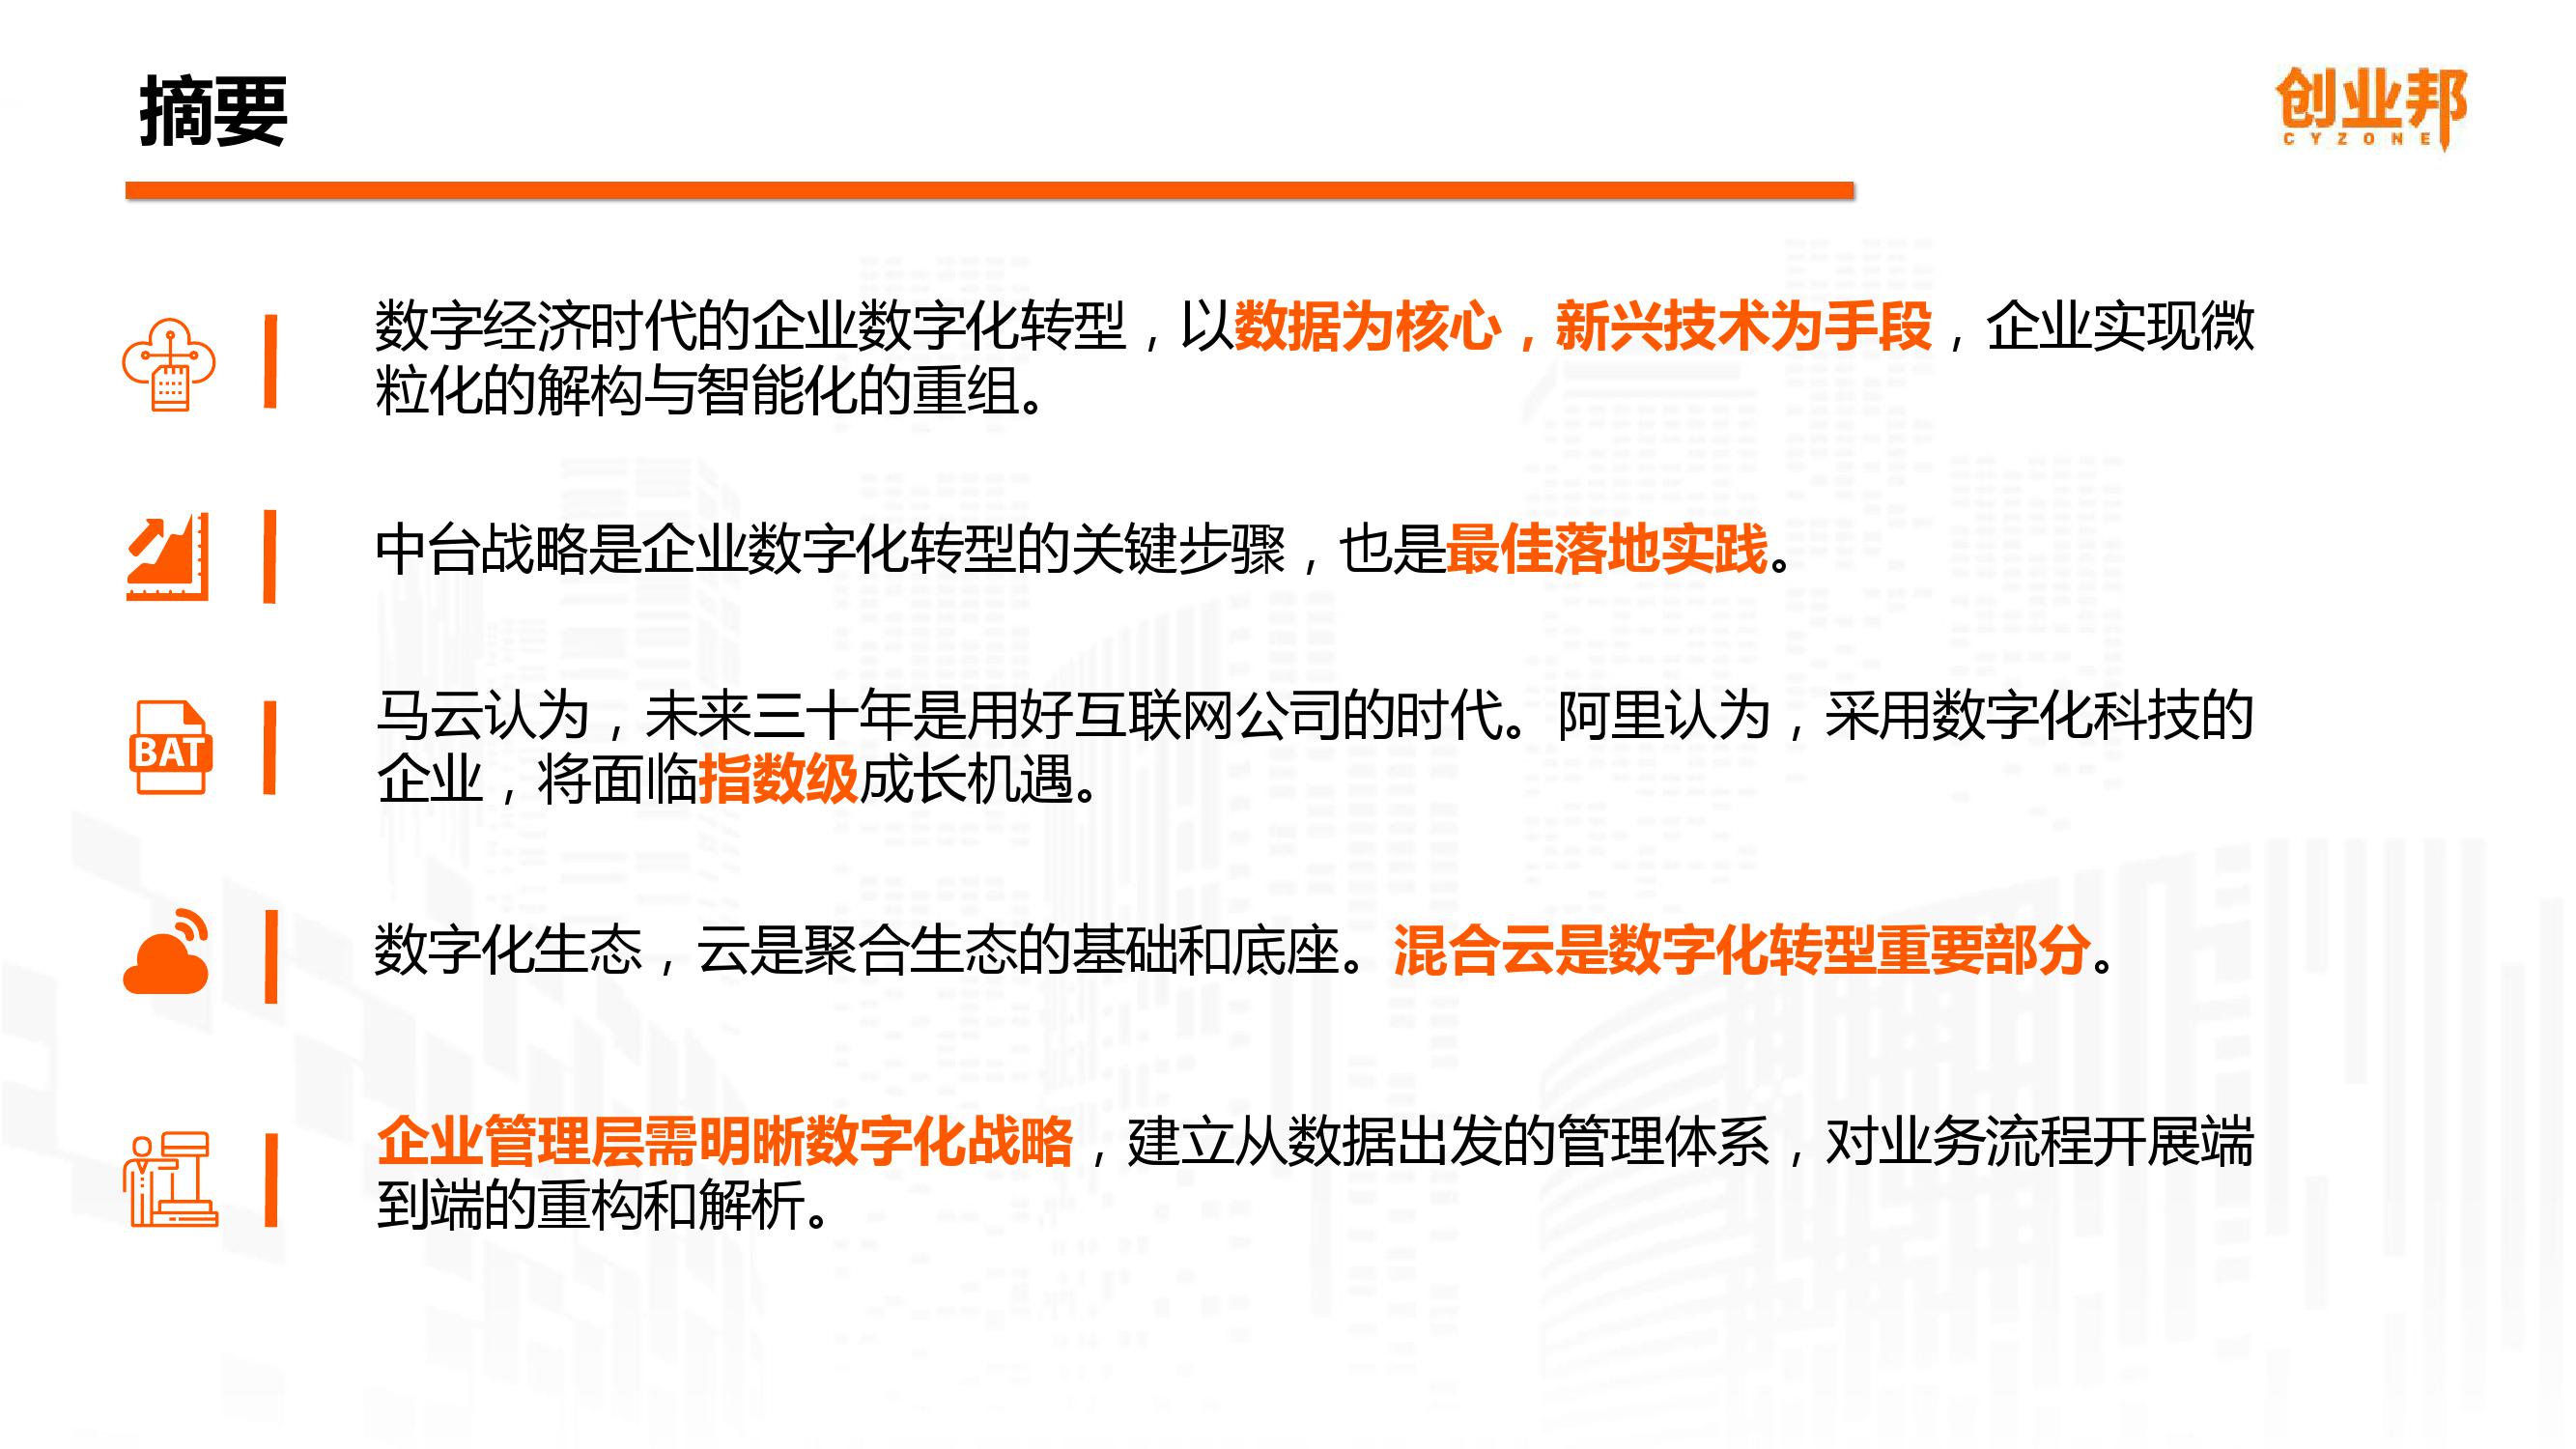 2019中国企业数字化智能化研究报告_000002-3